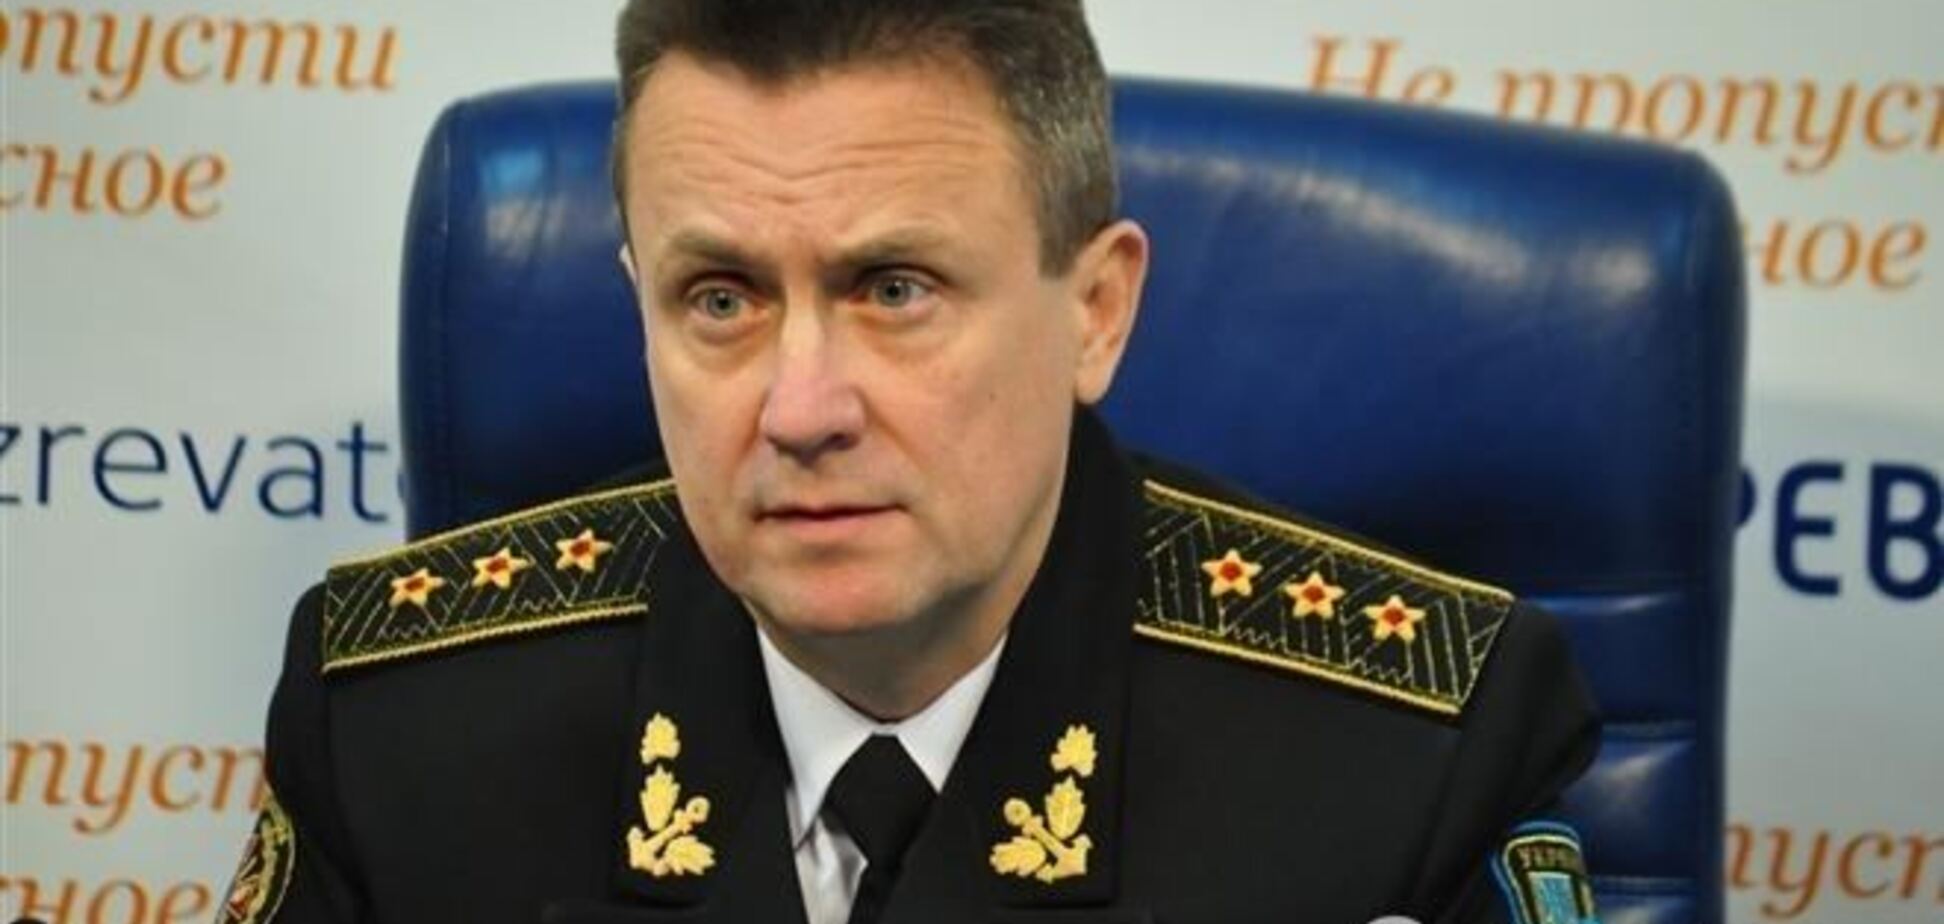 Віце-адмірал: Путін хоче побудувати новий світовий порядок